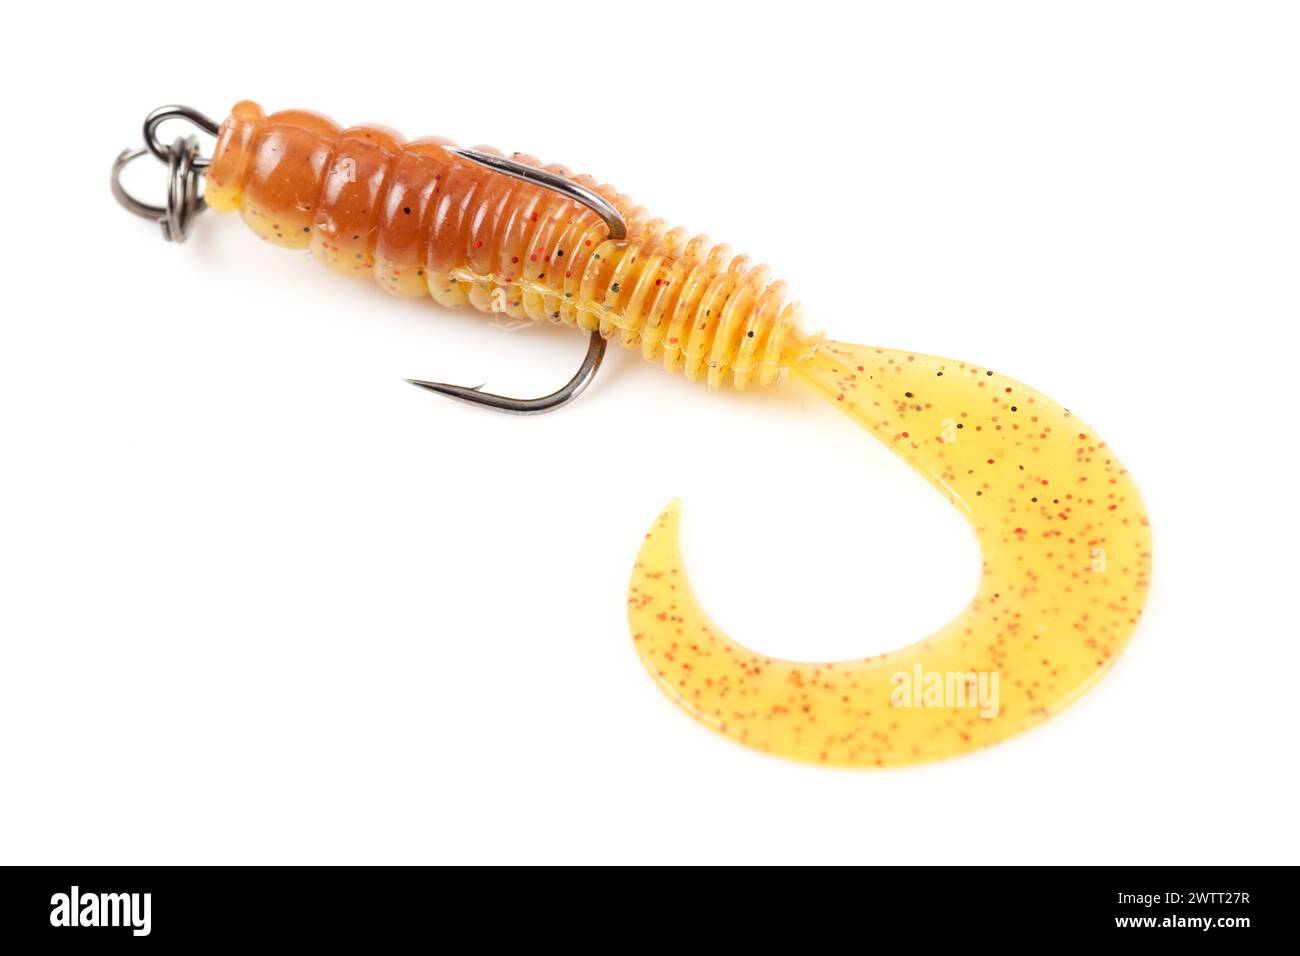 Larve de silicone jaune, leurre de pêche avec double crochet, isolé sur fond blanc Banque D'Images